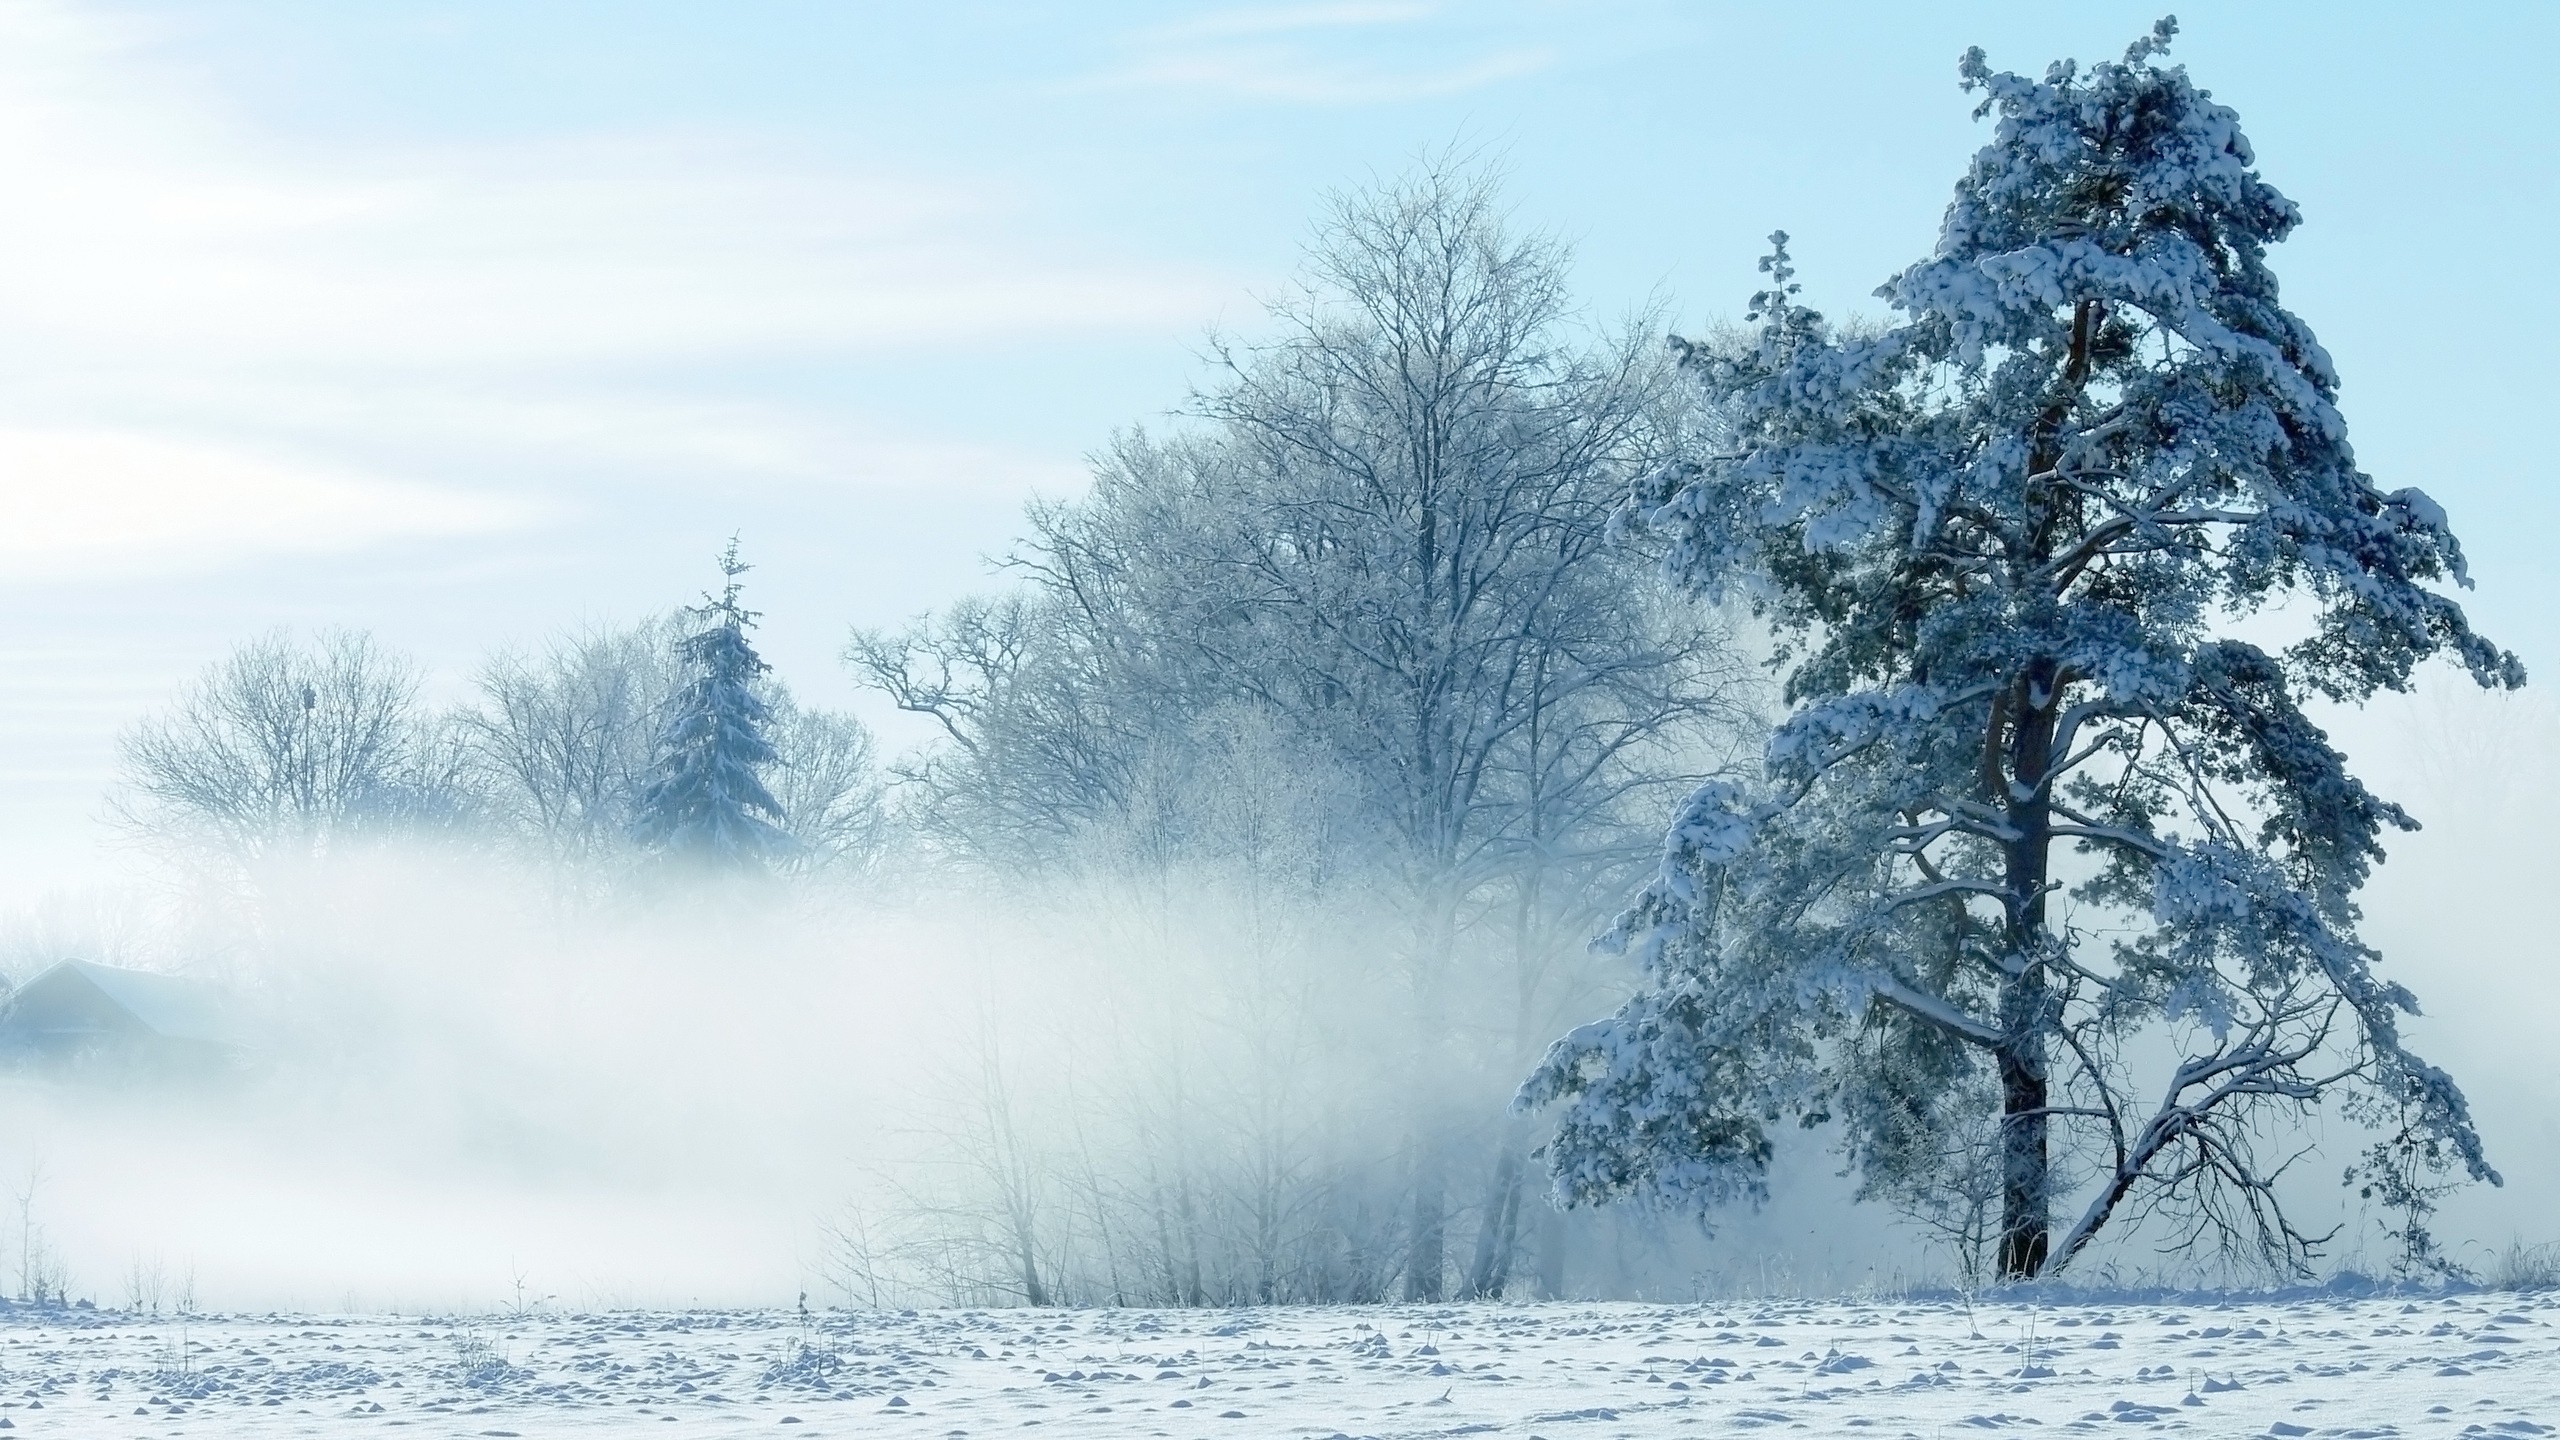 Скачать обои бесплатно Зима, Снег, Дерево, Туман, Поле, Земля/природа картинка на рабочий стол ПК